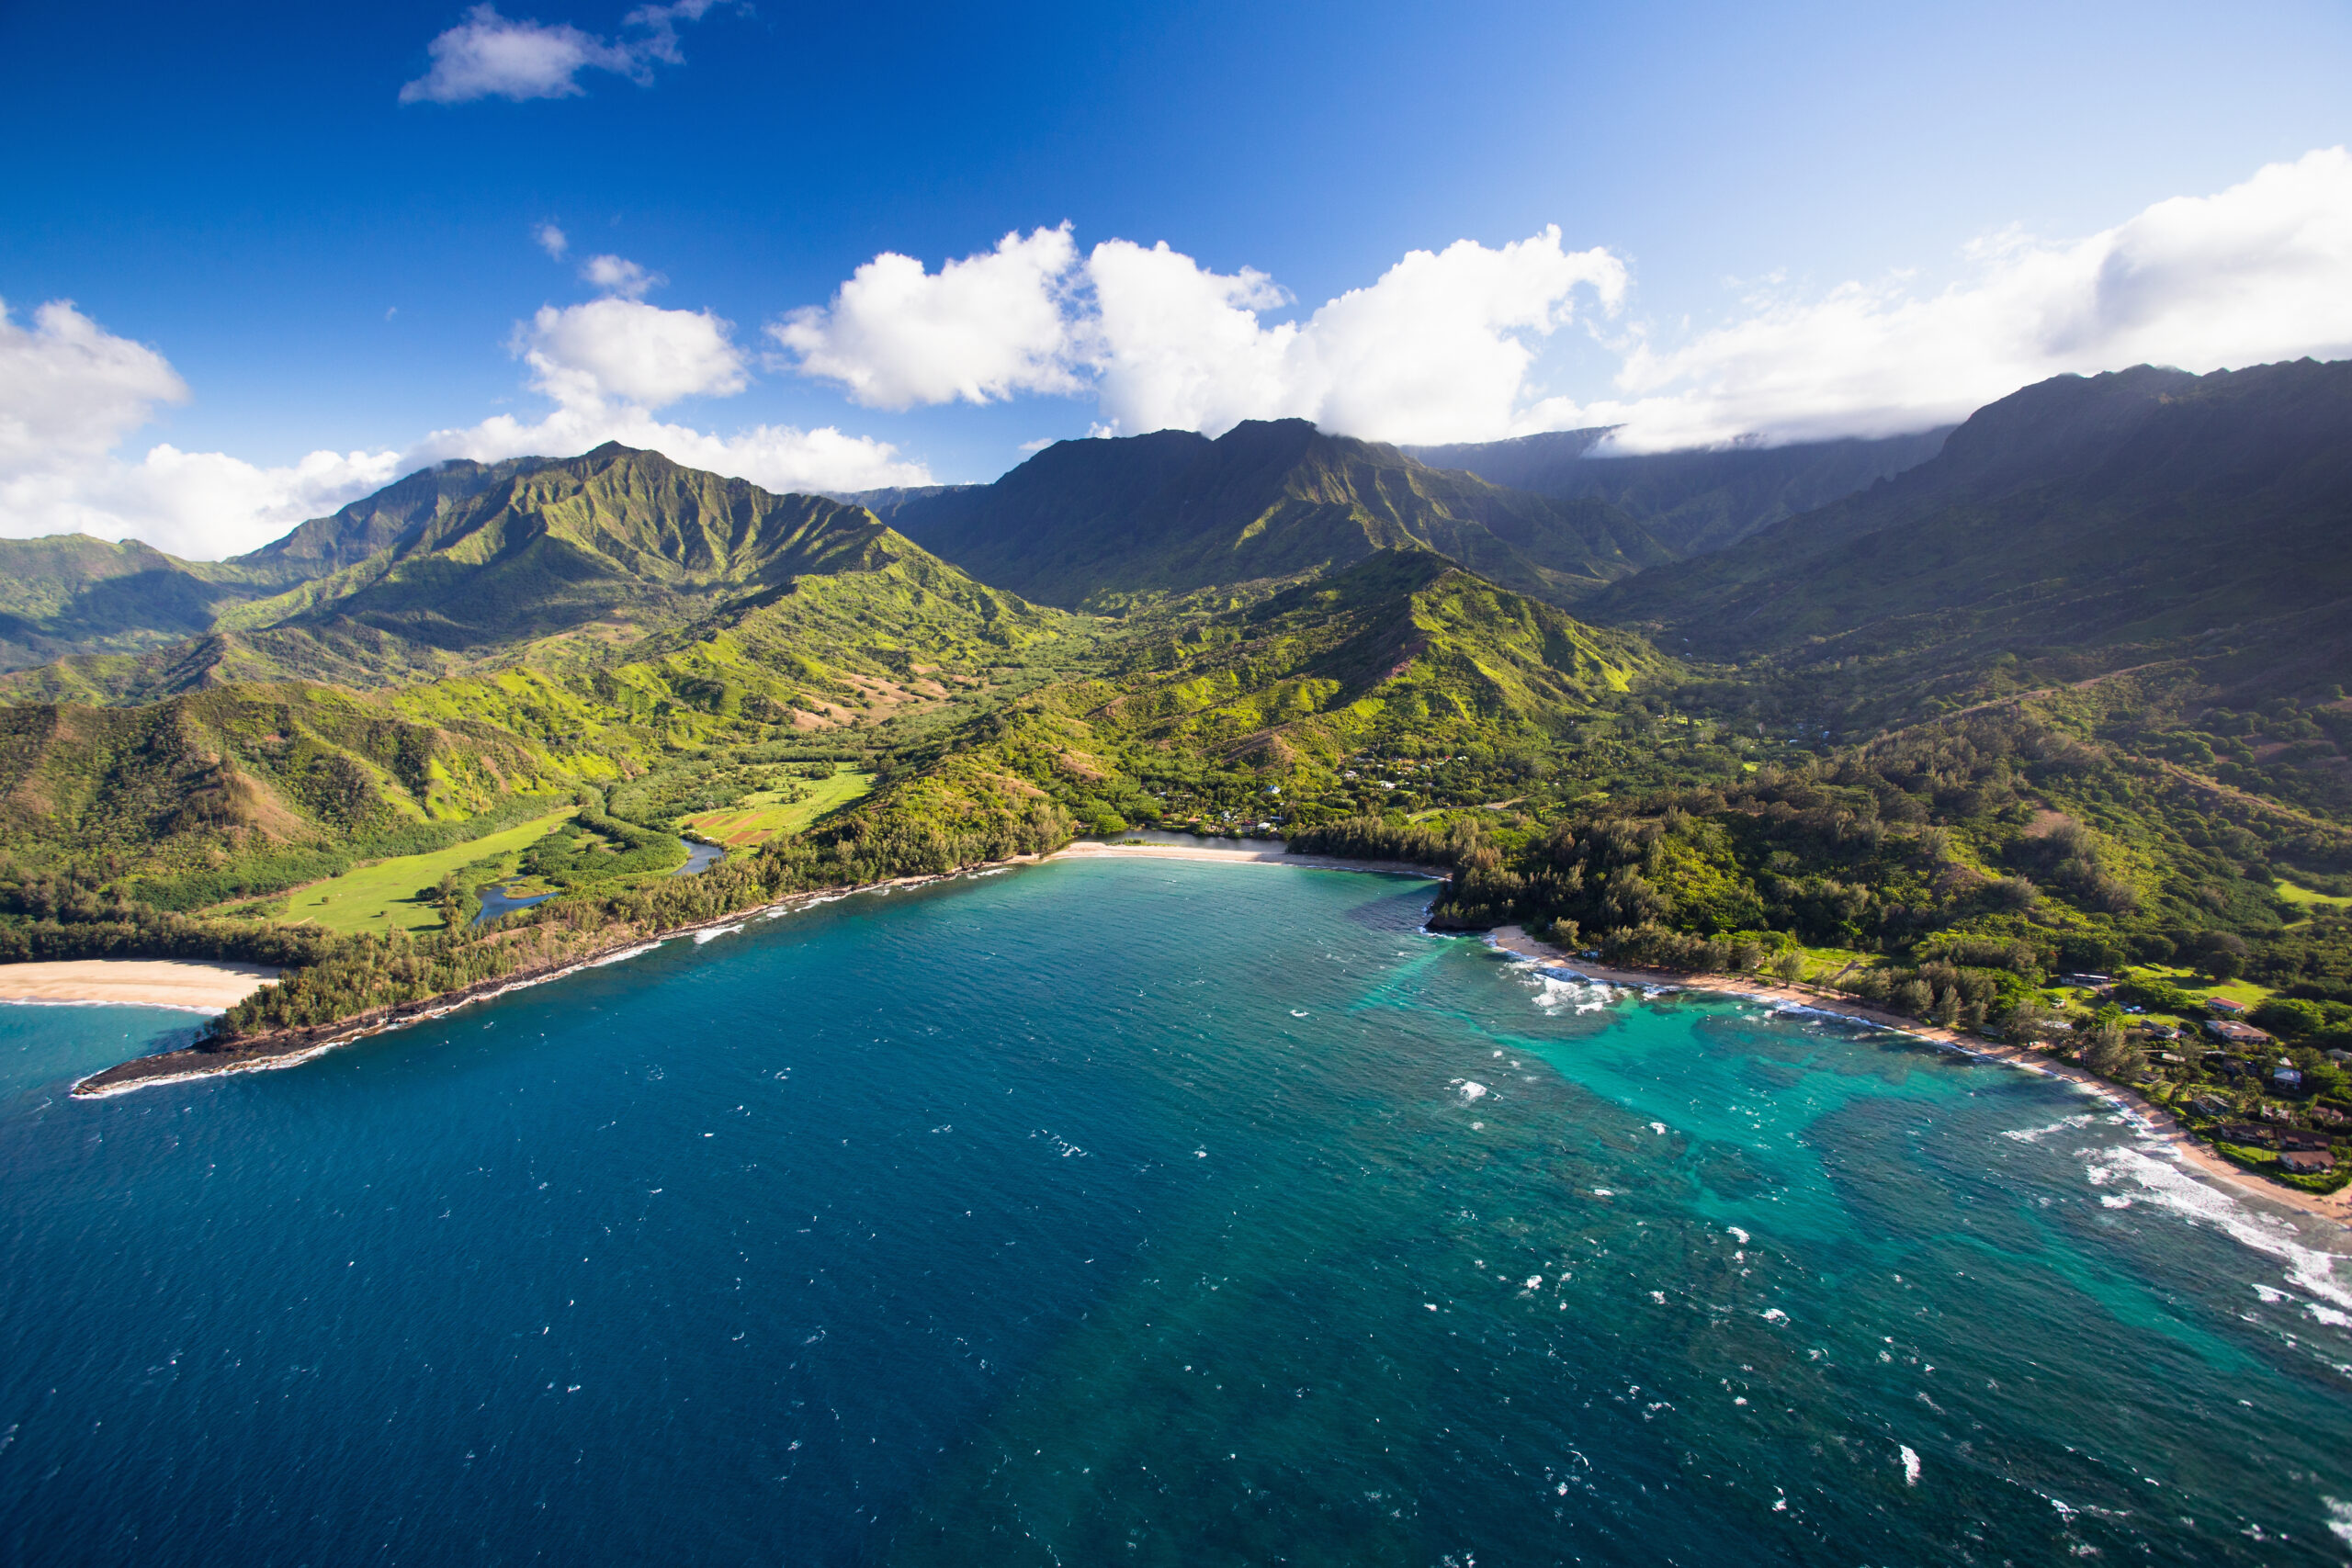 Kauai shoreline and mountainous backdrop as seen from above.